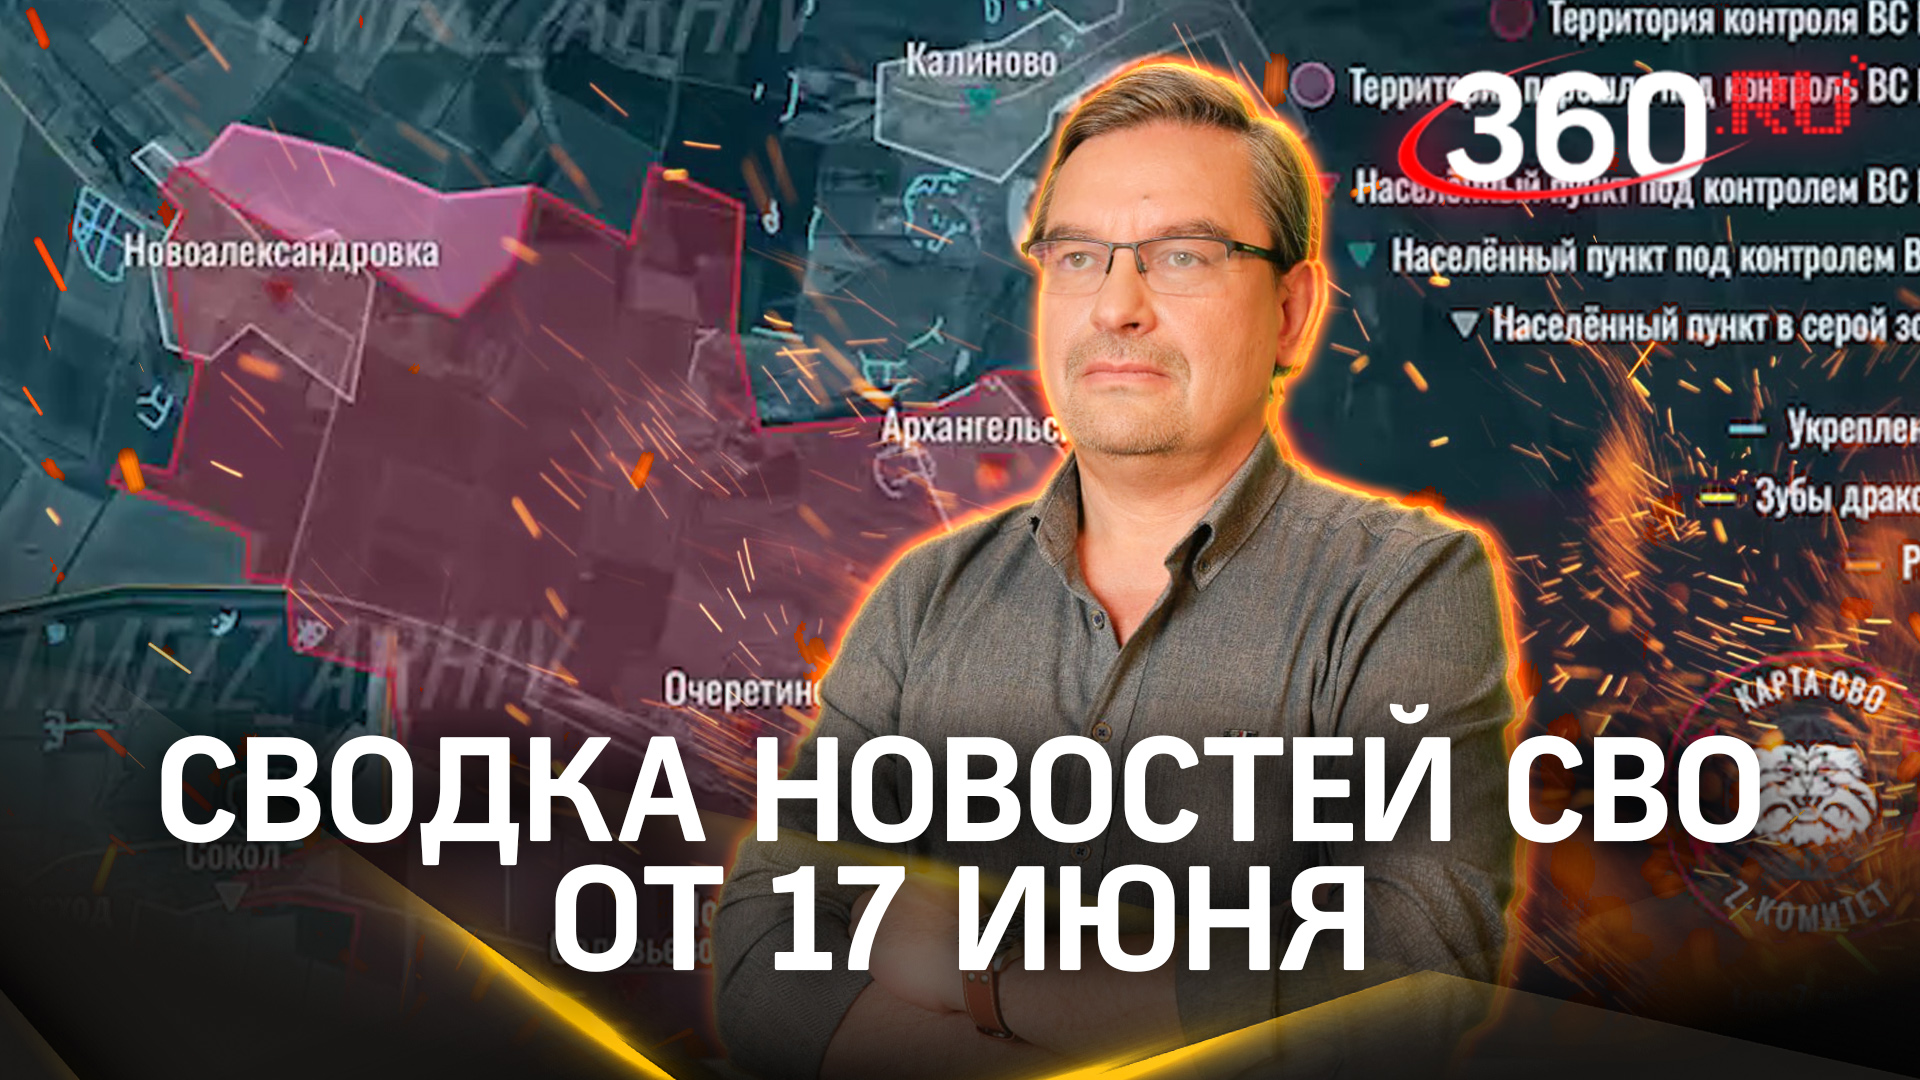 Михаил Онуфриенко: «ВСУ не удалось продвинуться ни на сантиметр». Сводка новостей СВО от 17 июня